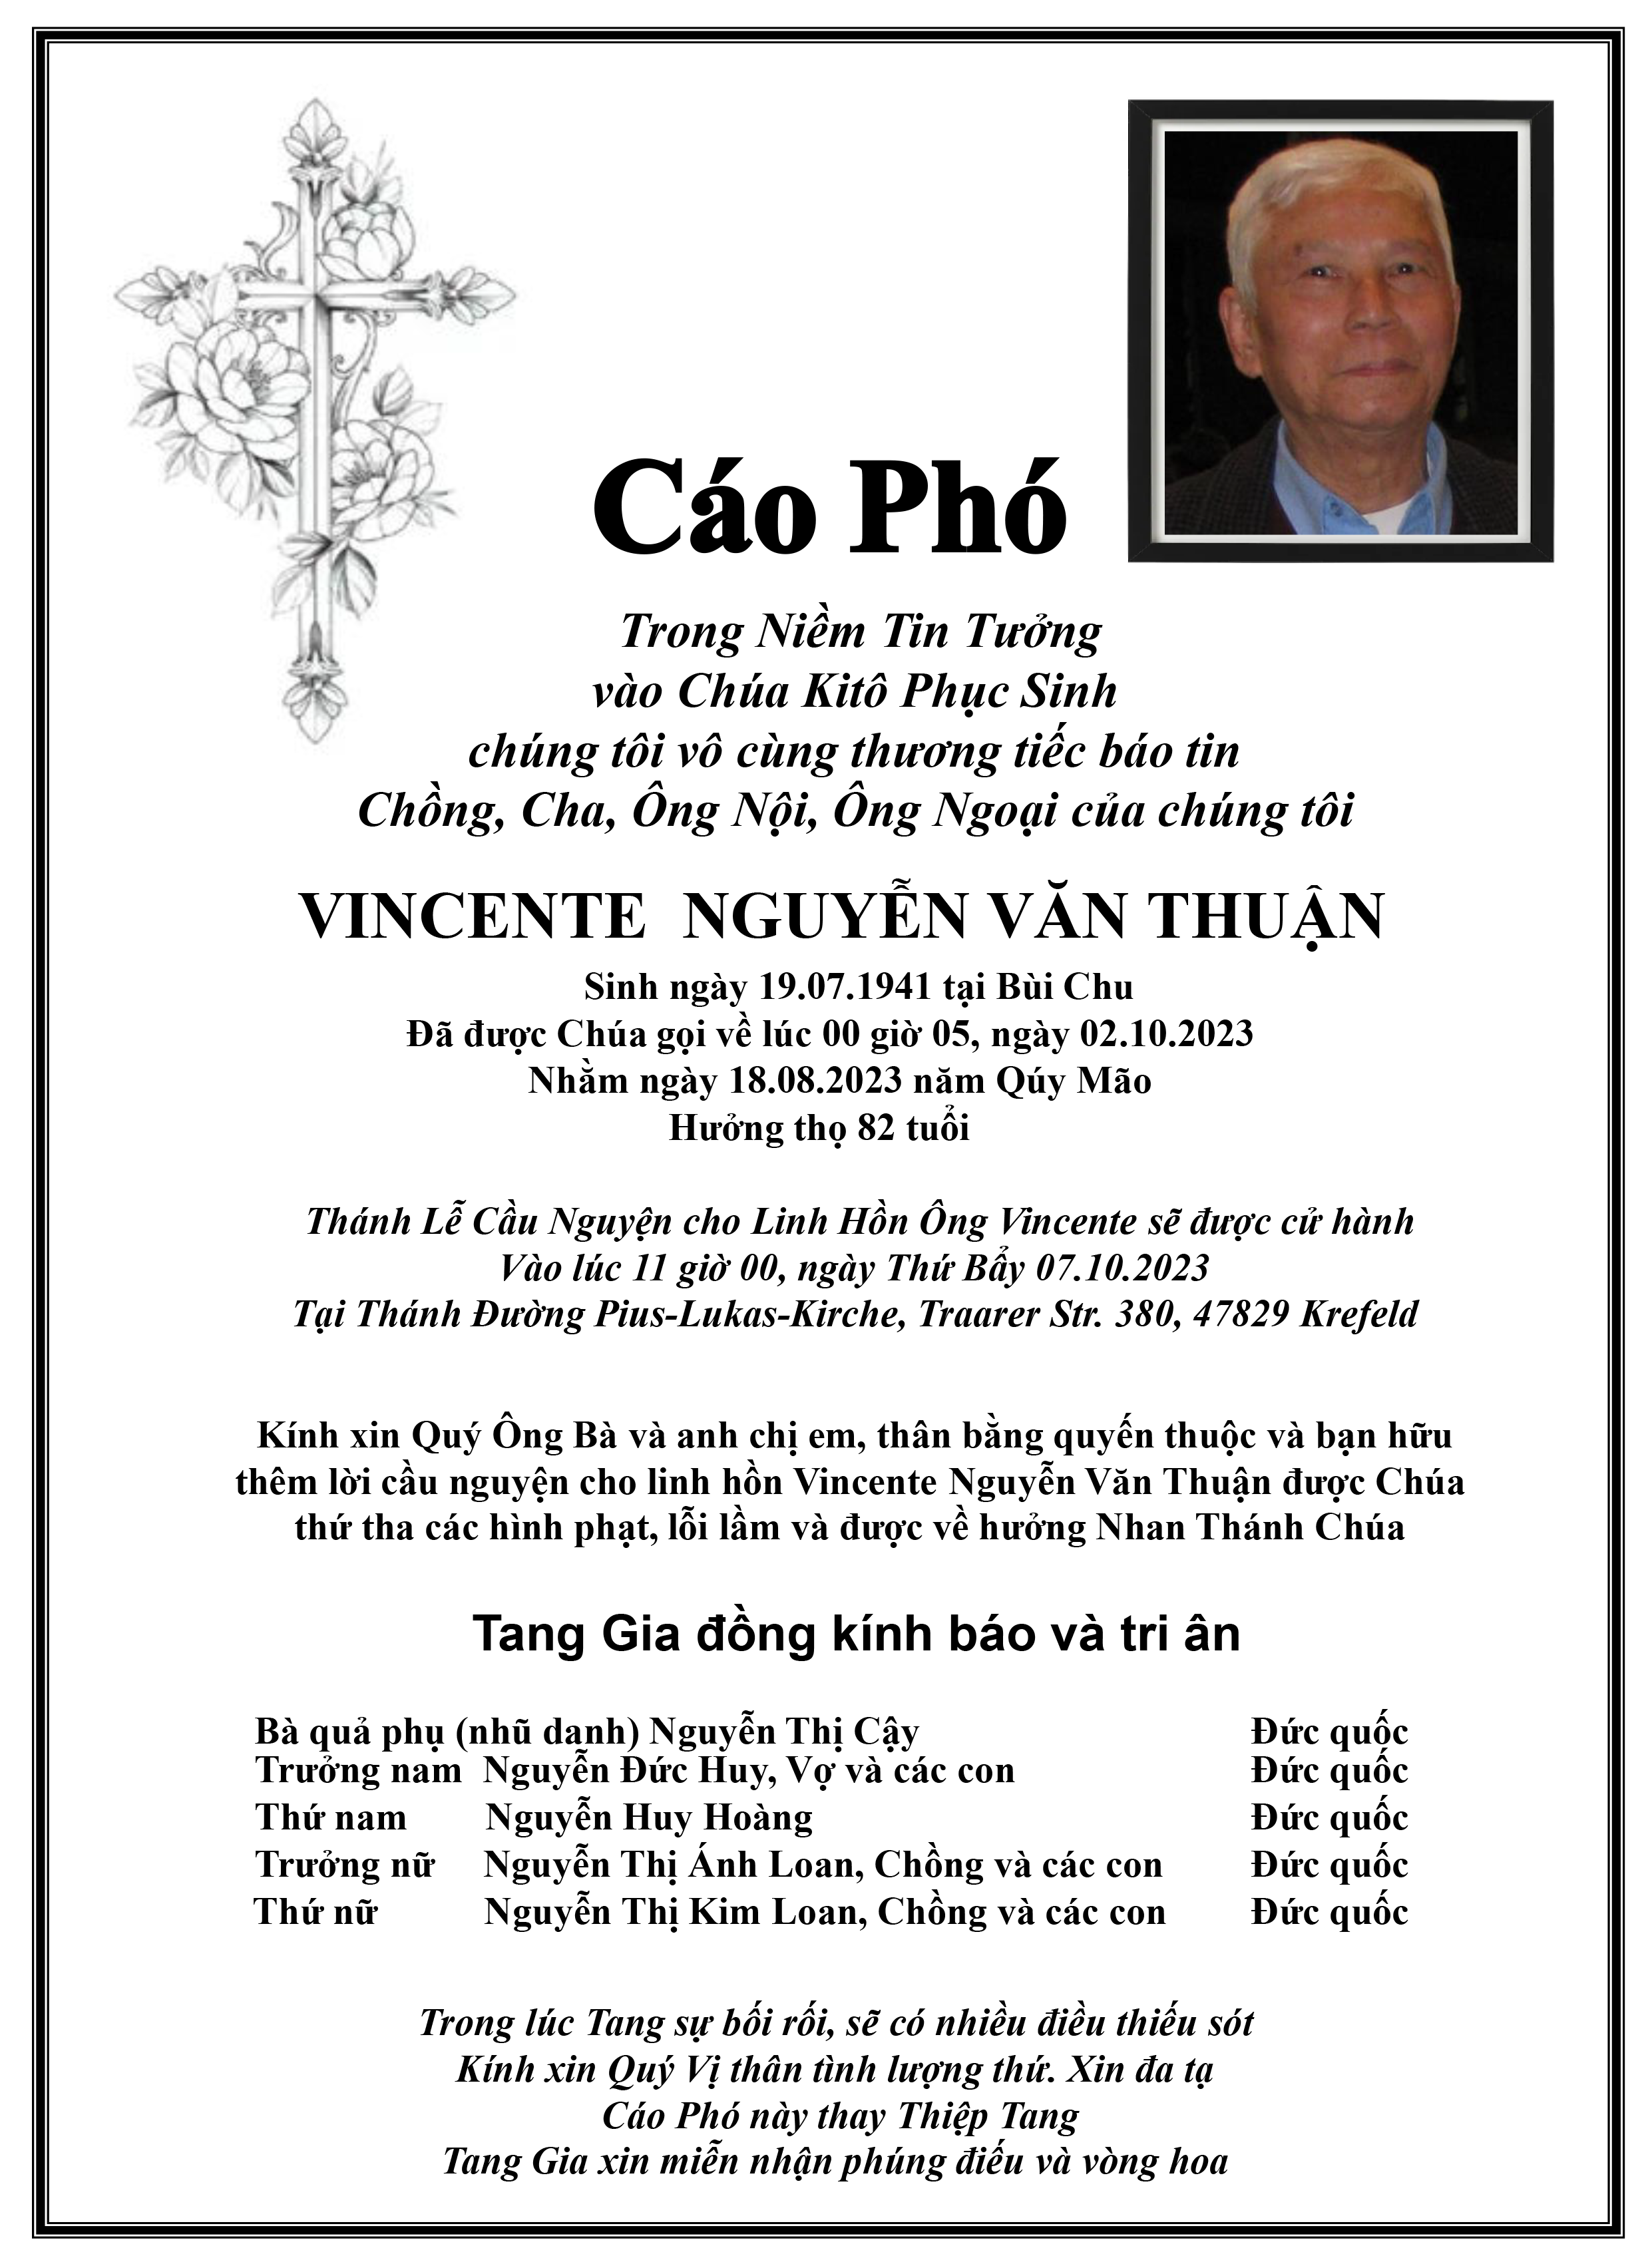 CP Vicente Nguyen Van Thuan